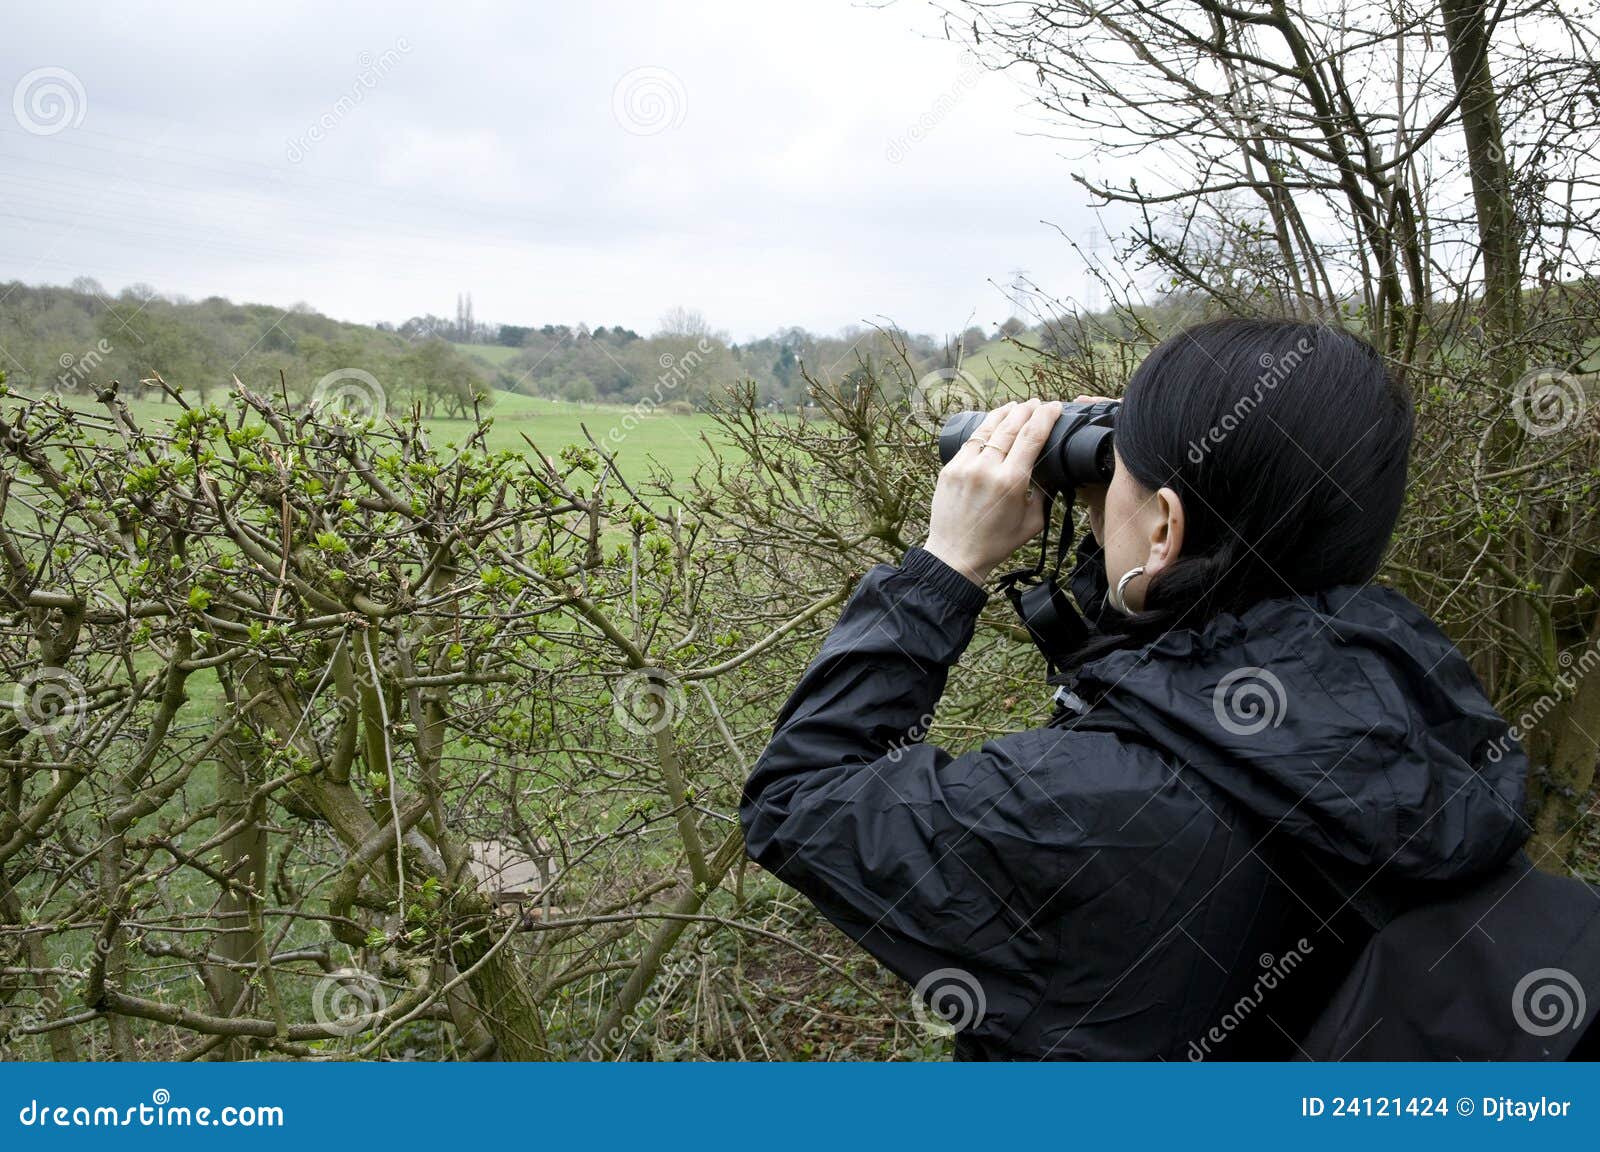 woman birdwatching